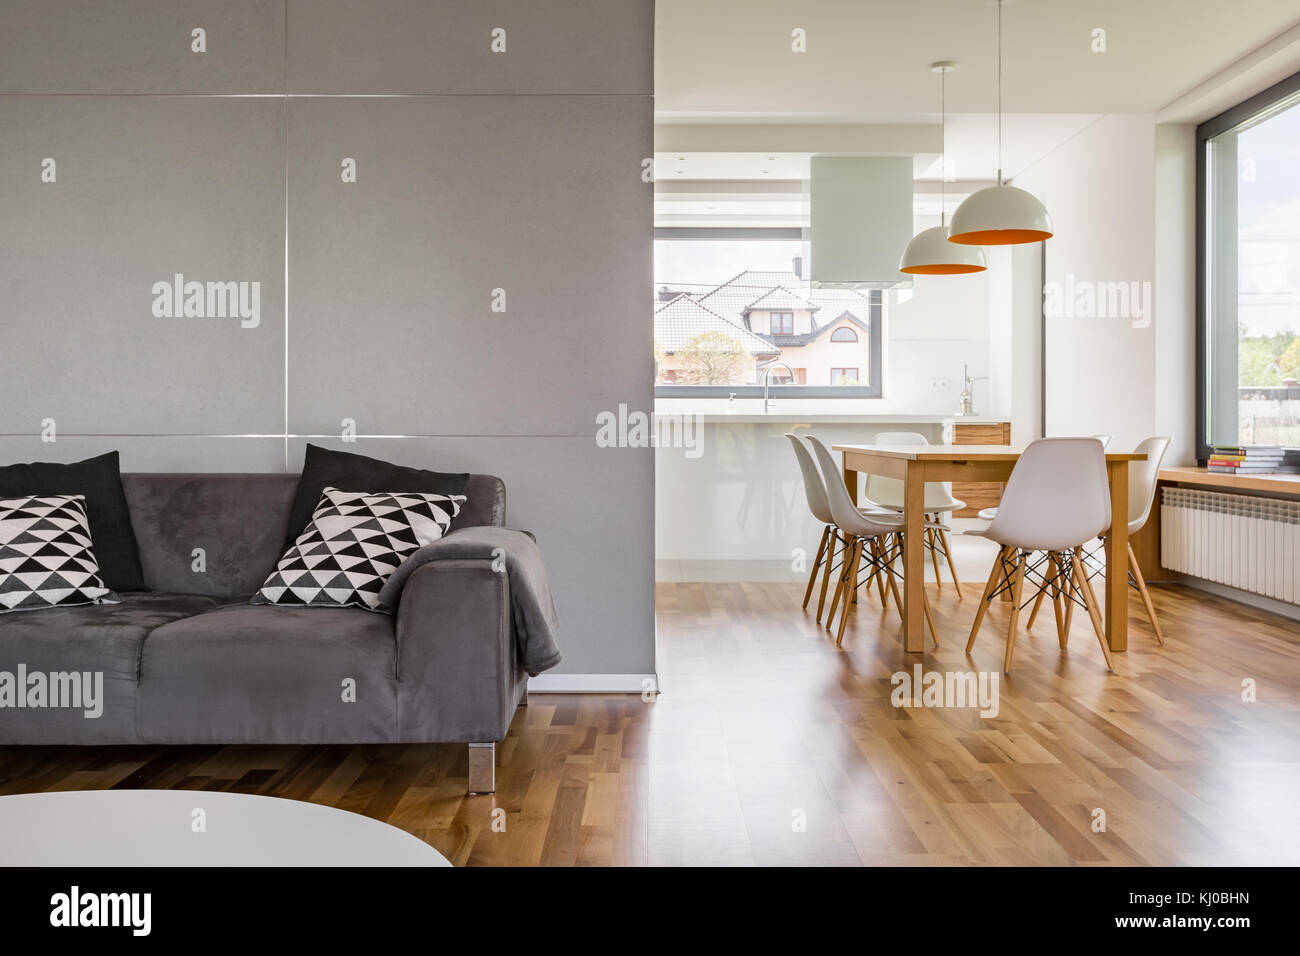 Wohneinrichtung mit grauer Couch, Holztisch und modernen Lampen Stockfoto